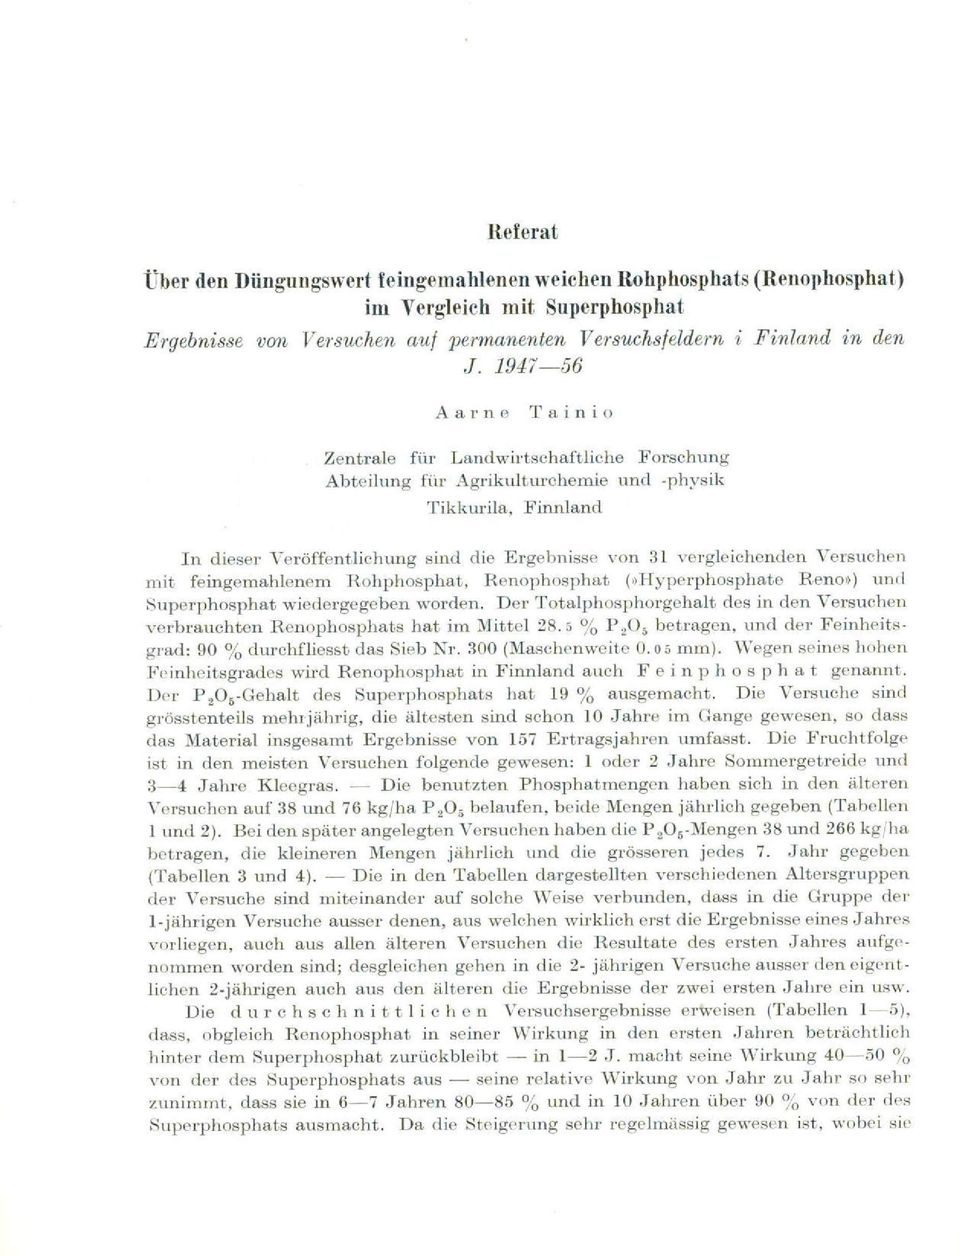 Versuchen mit feingemahlenem Rohphosphat, Renophosphat (»Hyperphosphate Rene») und Superphosphat wiedergegeben worden.